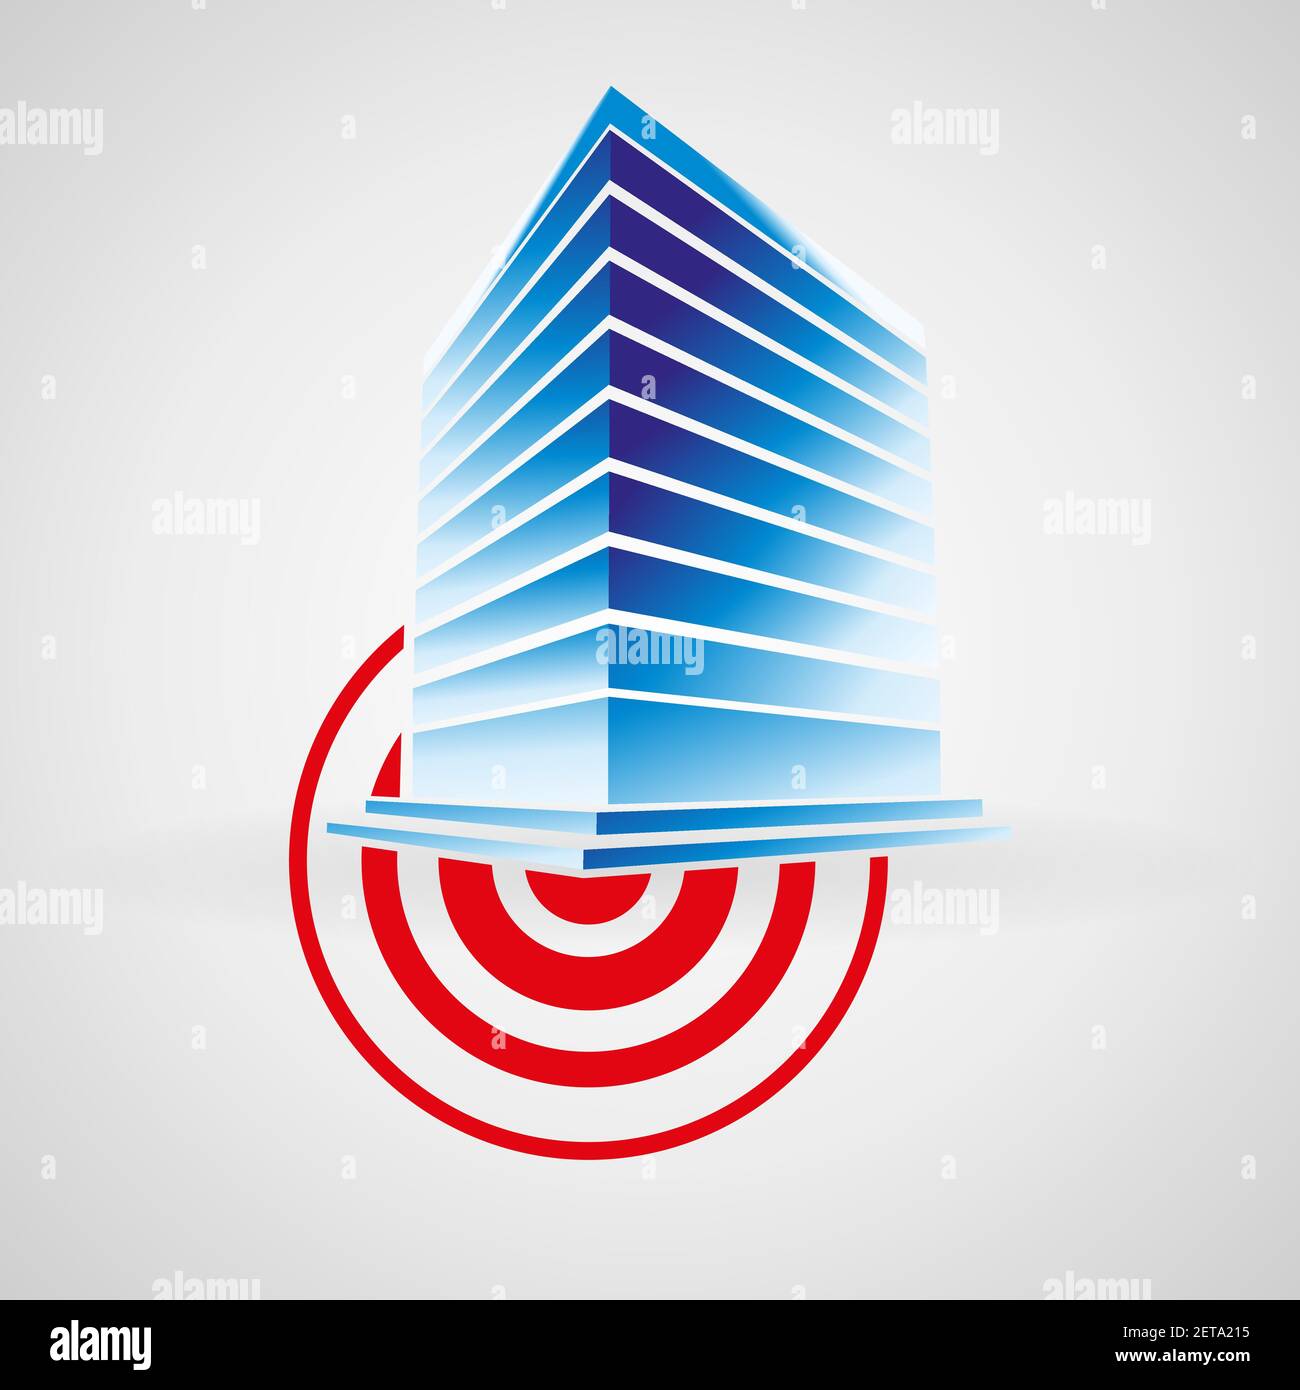 Globale Seismologie Zeichen Branding Identität Corporate Vektor Logo Design-Vorlage isoliert auf einem weißen Hintergrund. Symbol für Erdbebengebäude Stock Vektor